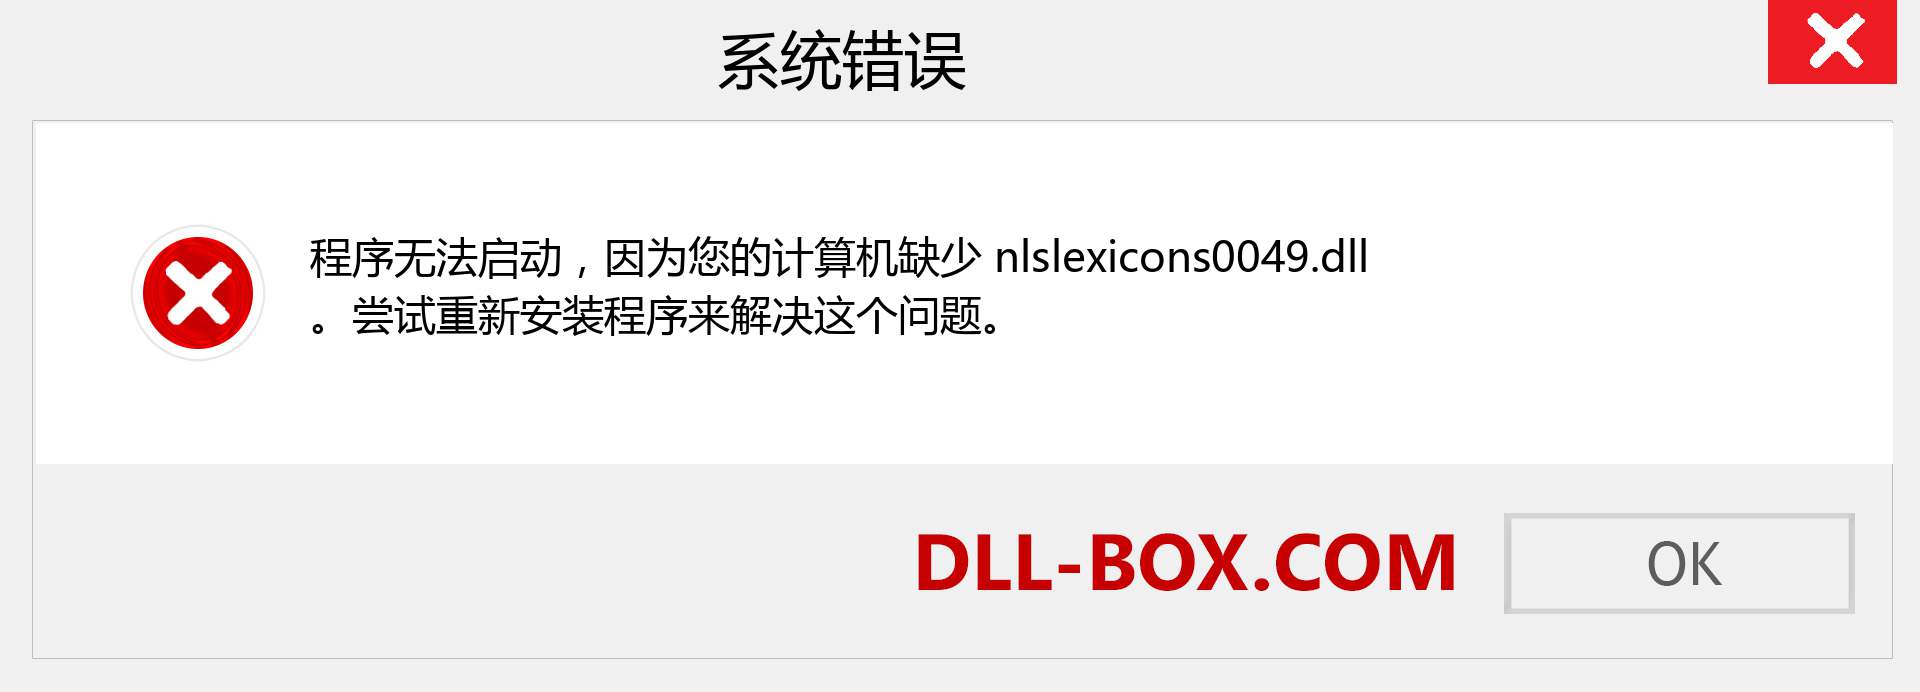 nlslexicons0049.dll 文件丢失？。 适用于 Windows 7、8、10 的下载 - 修复 Windows、照片、图像上的 nlslexicons0049 dll 丢失错误